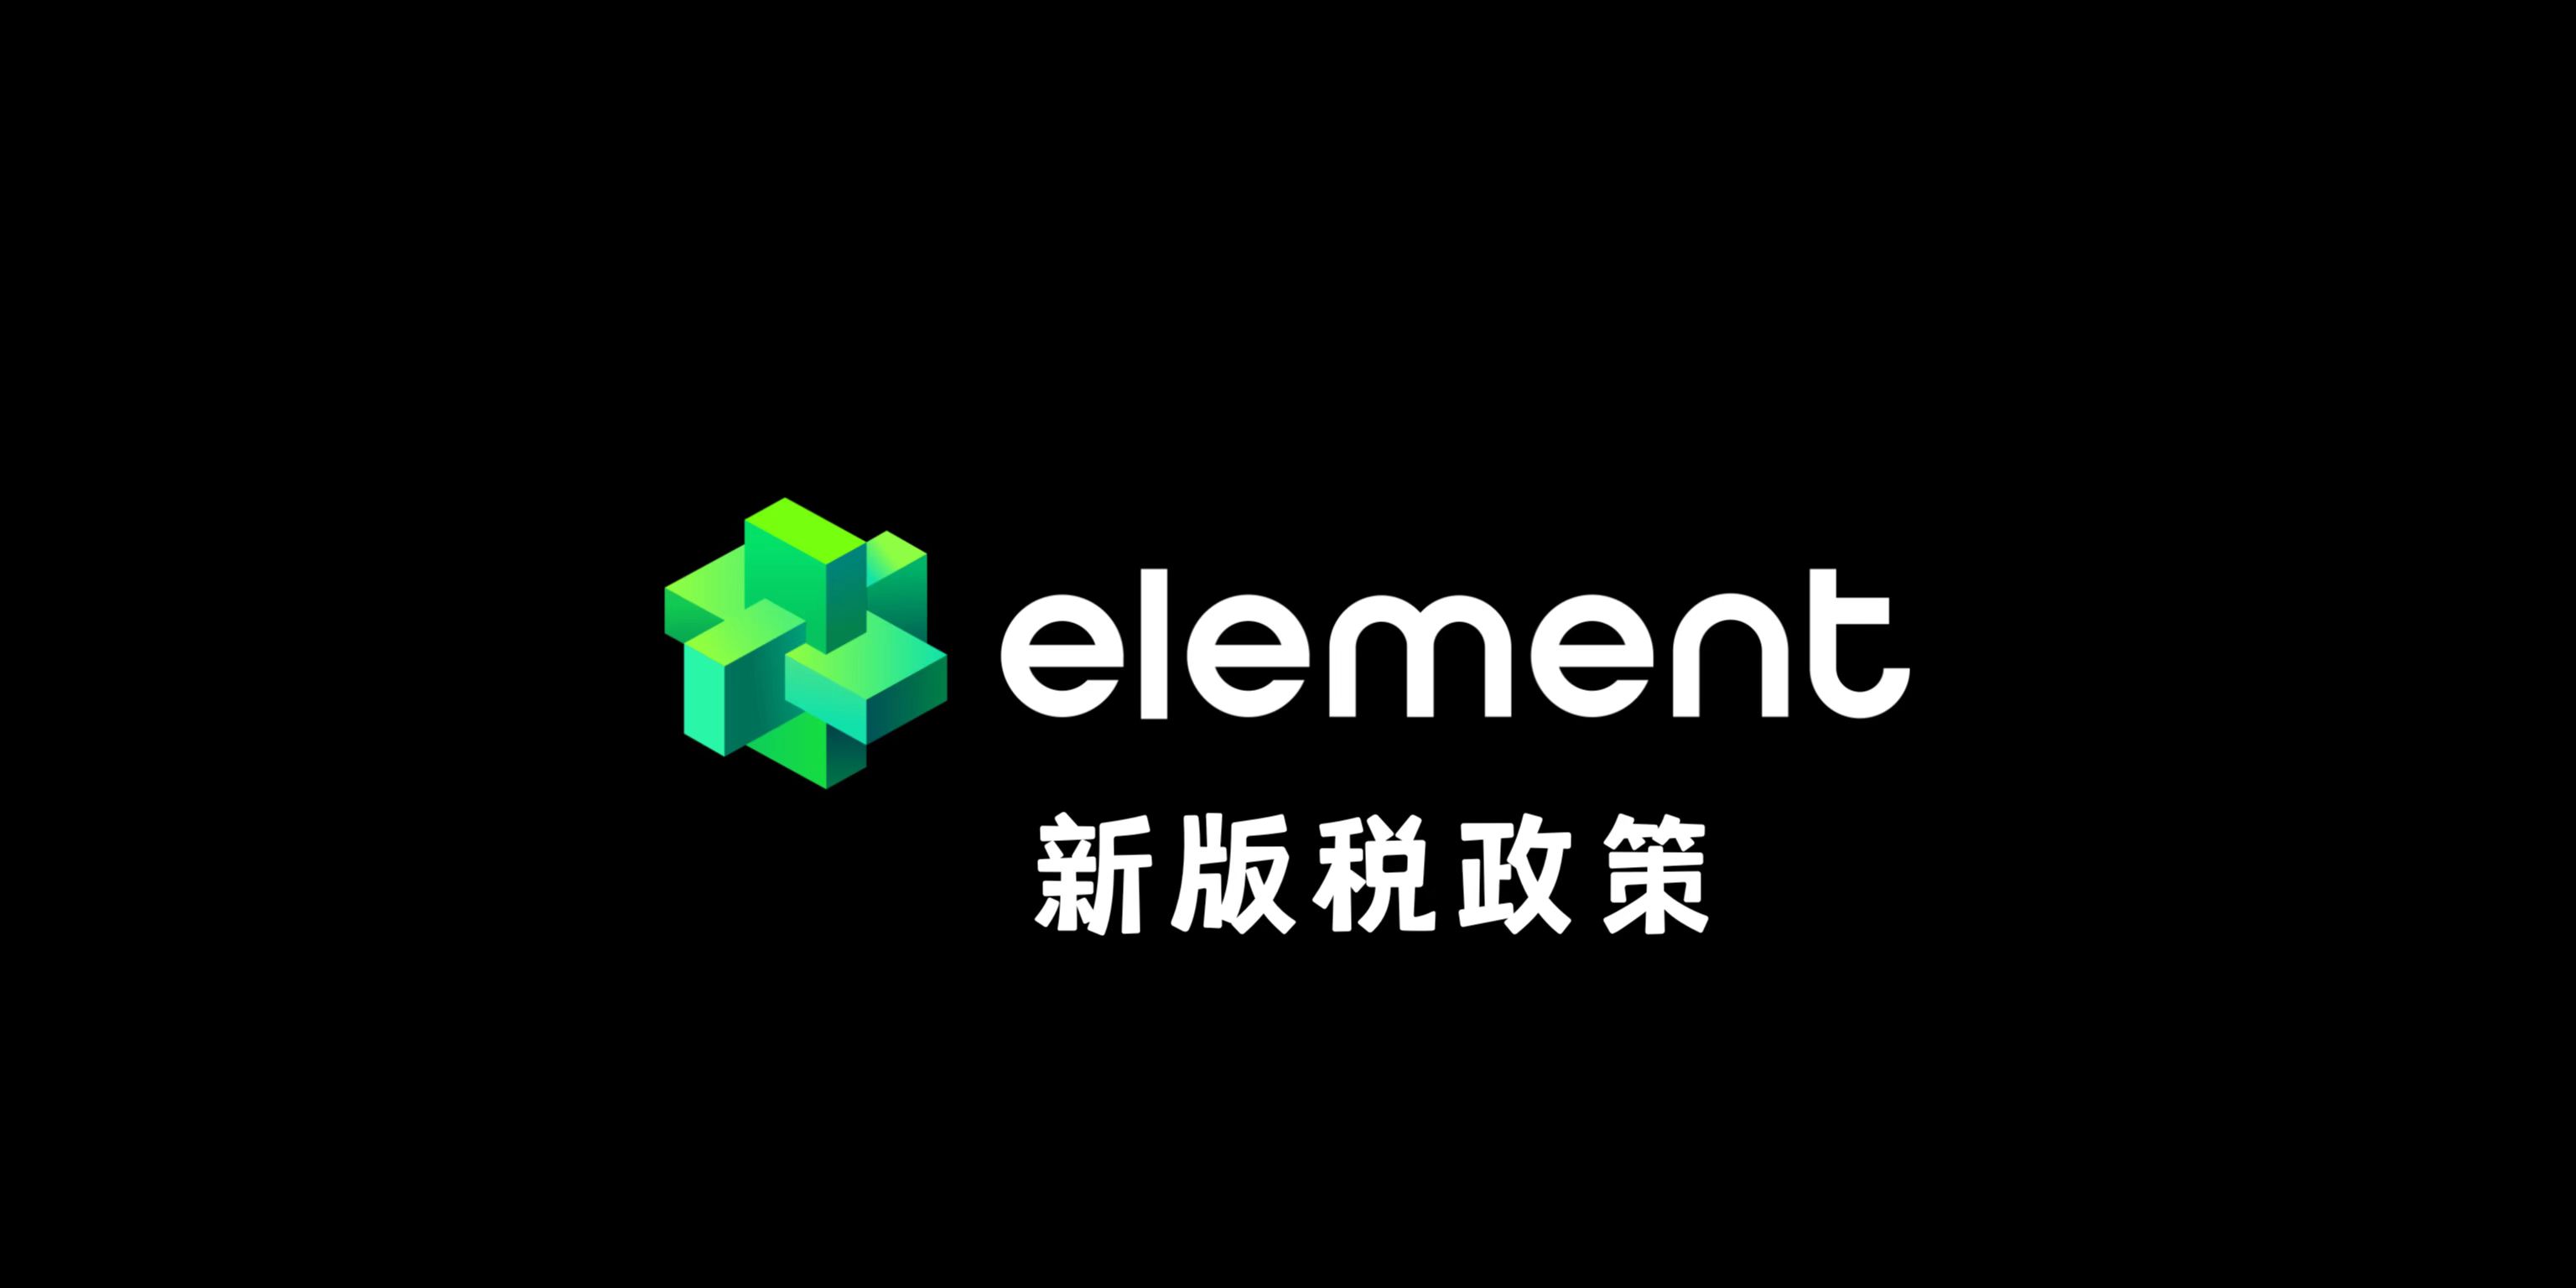 Element启动“新版税政策”，强调合作创作者，并与OpenSea保持一致